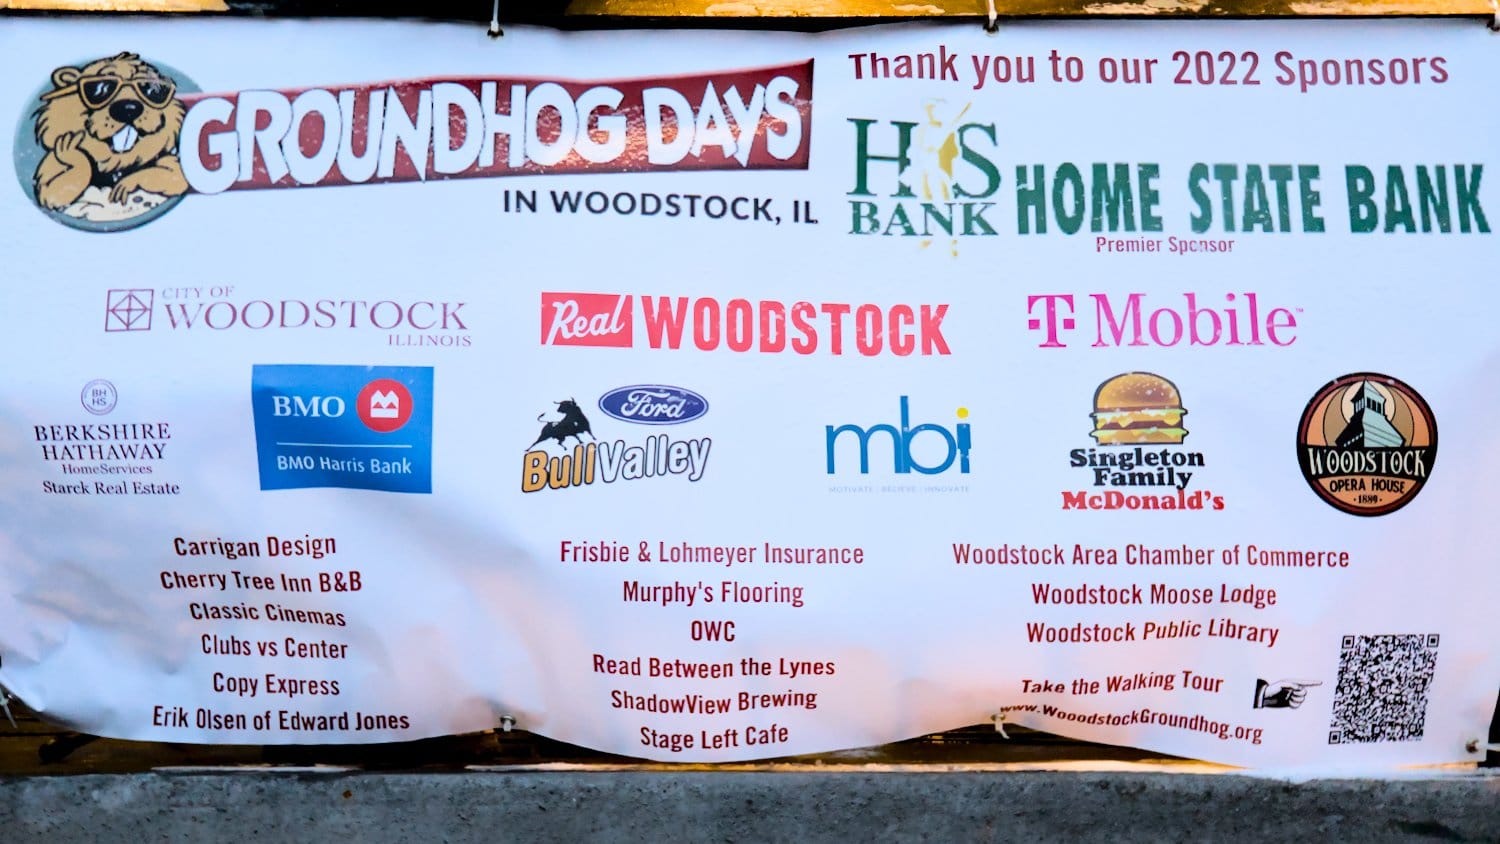 Woodstock's Groundhog Days sponsors for 2022.